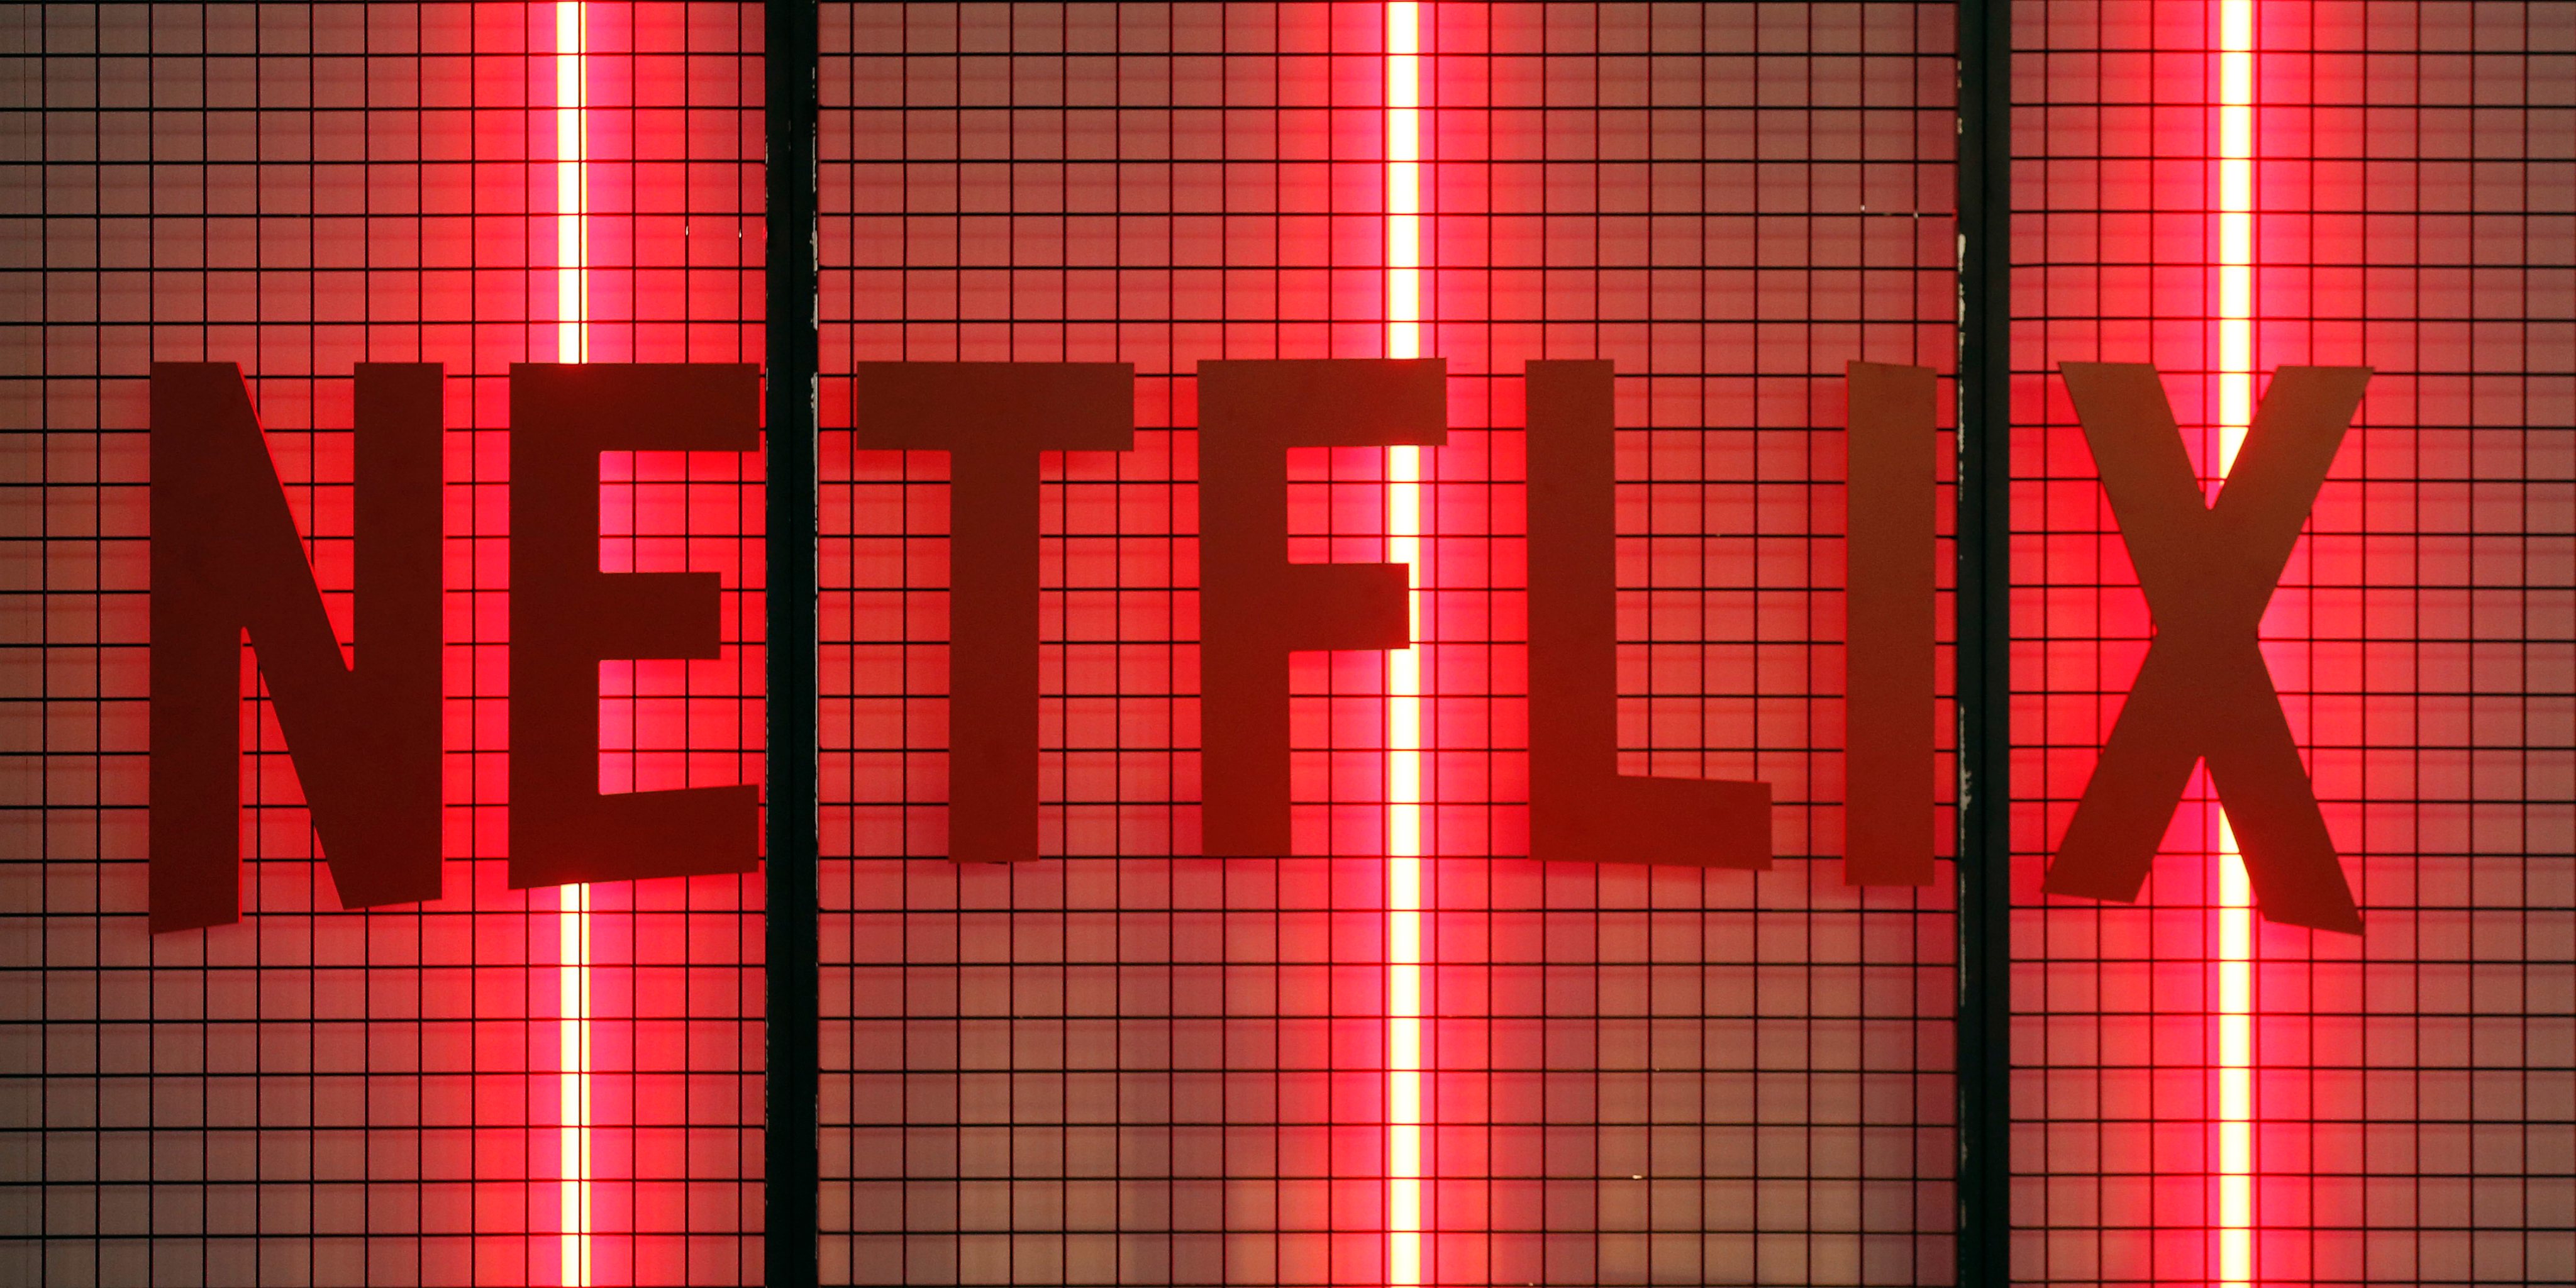 Maior parte dos assinantes Netflix também assina TV paga, diz pesquisa